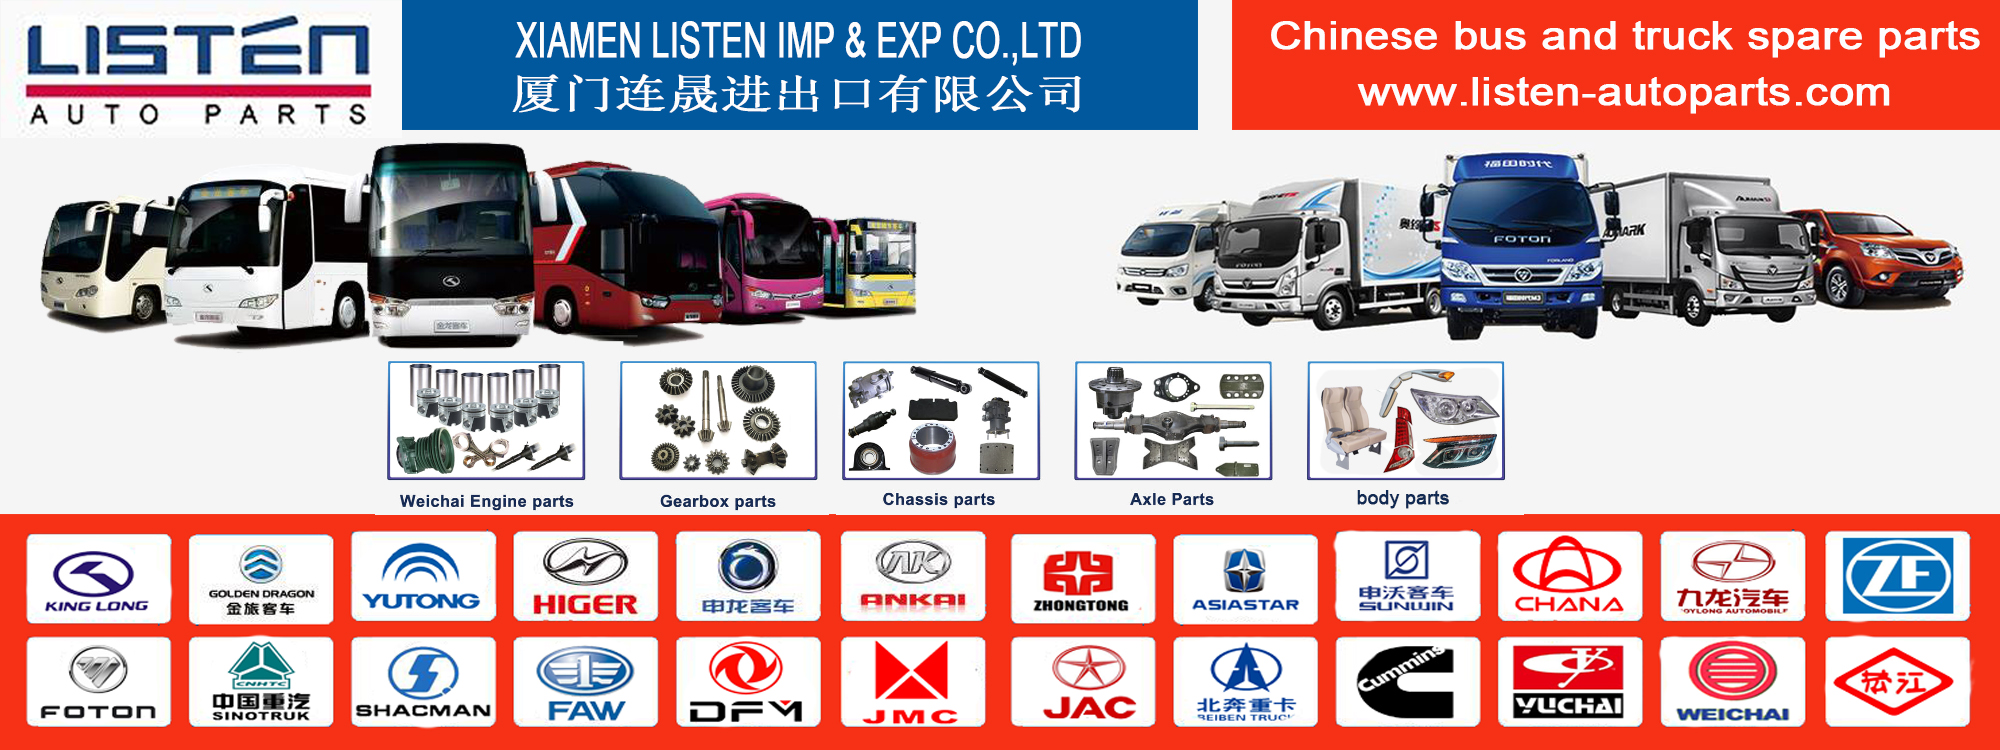 เซียะเหมิฟัง Imp & Exp Co. , Ltd